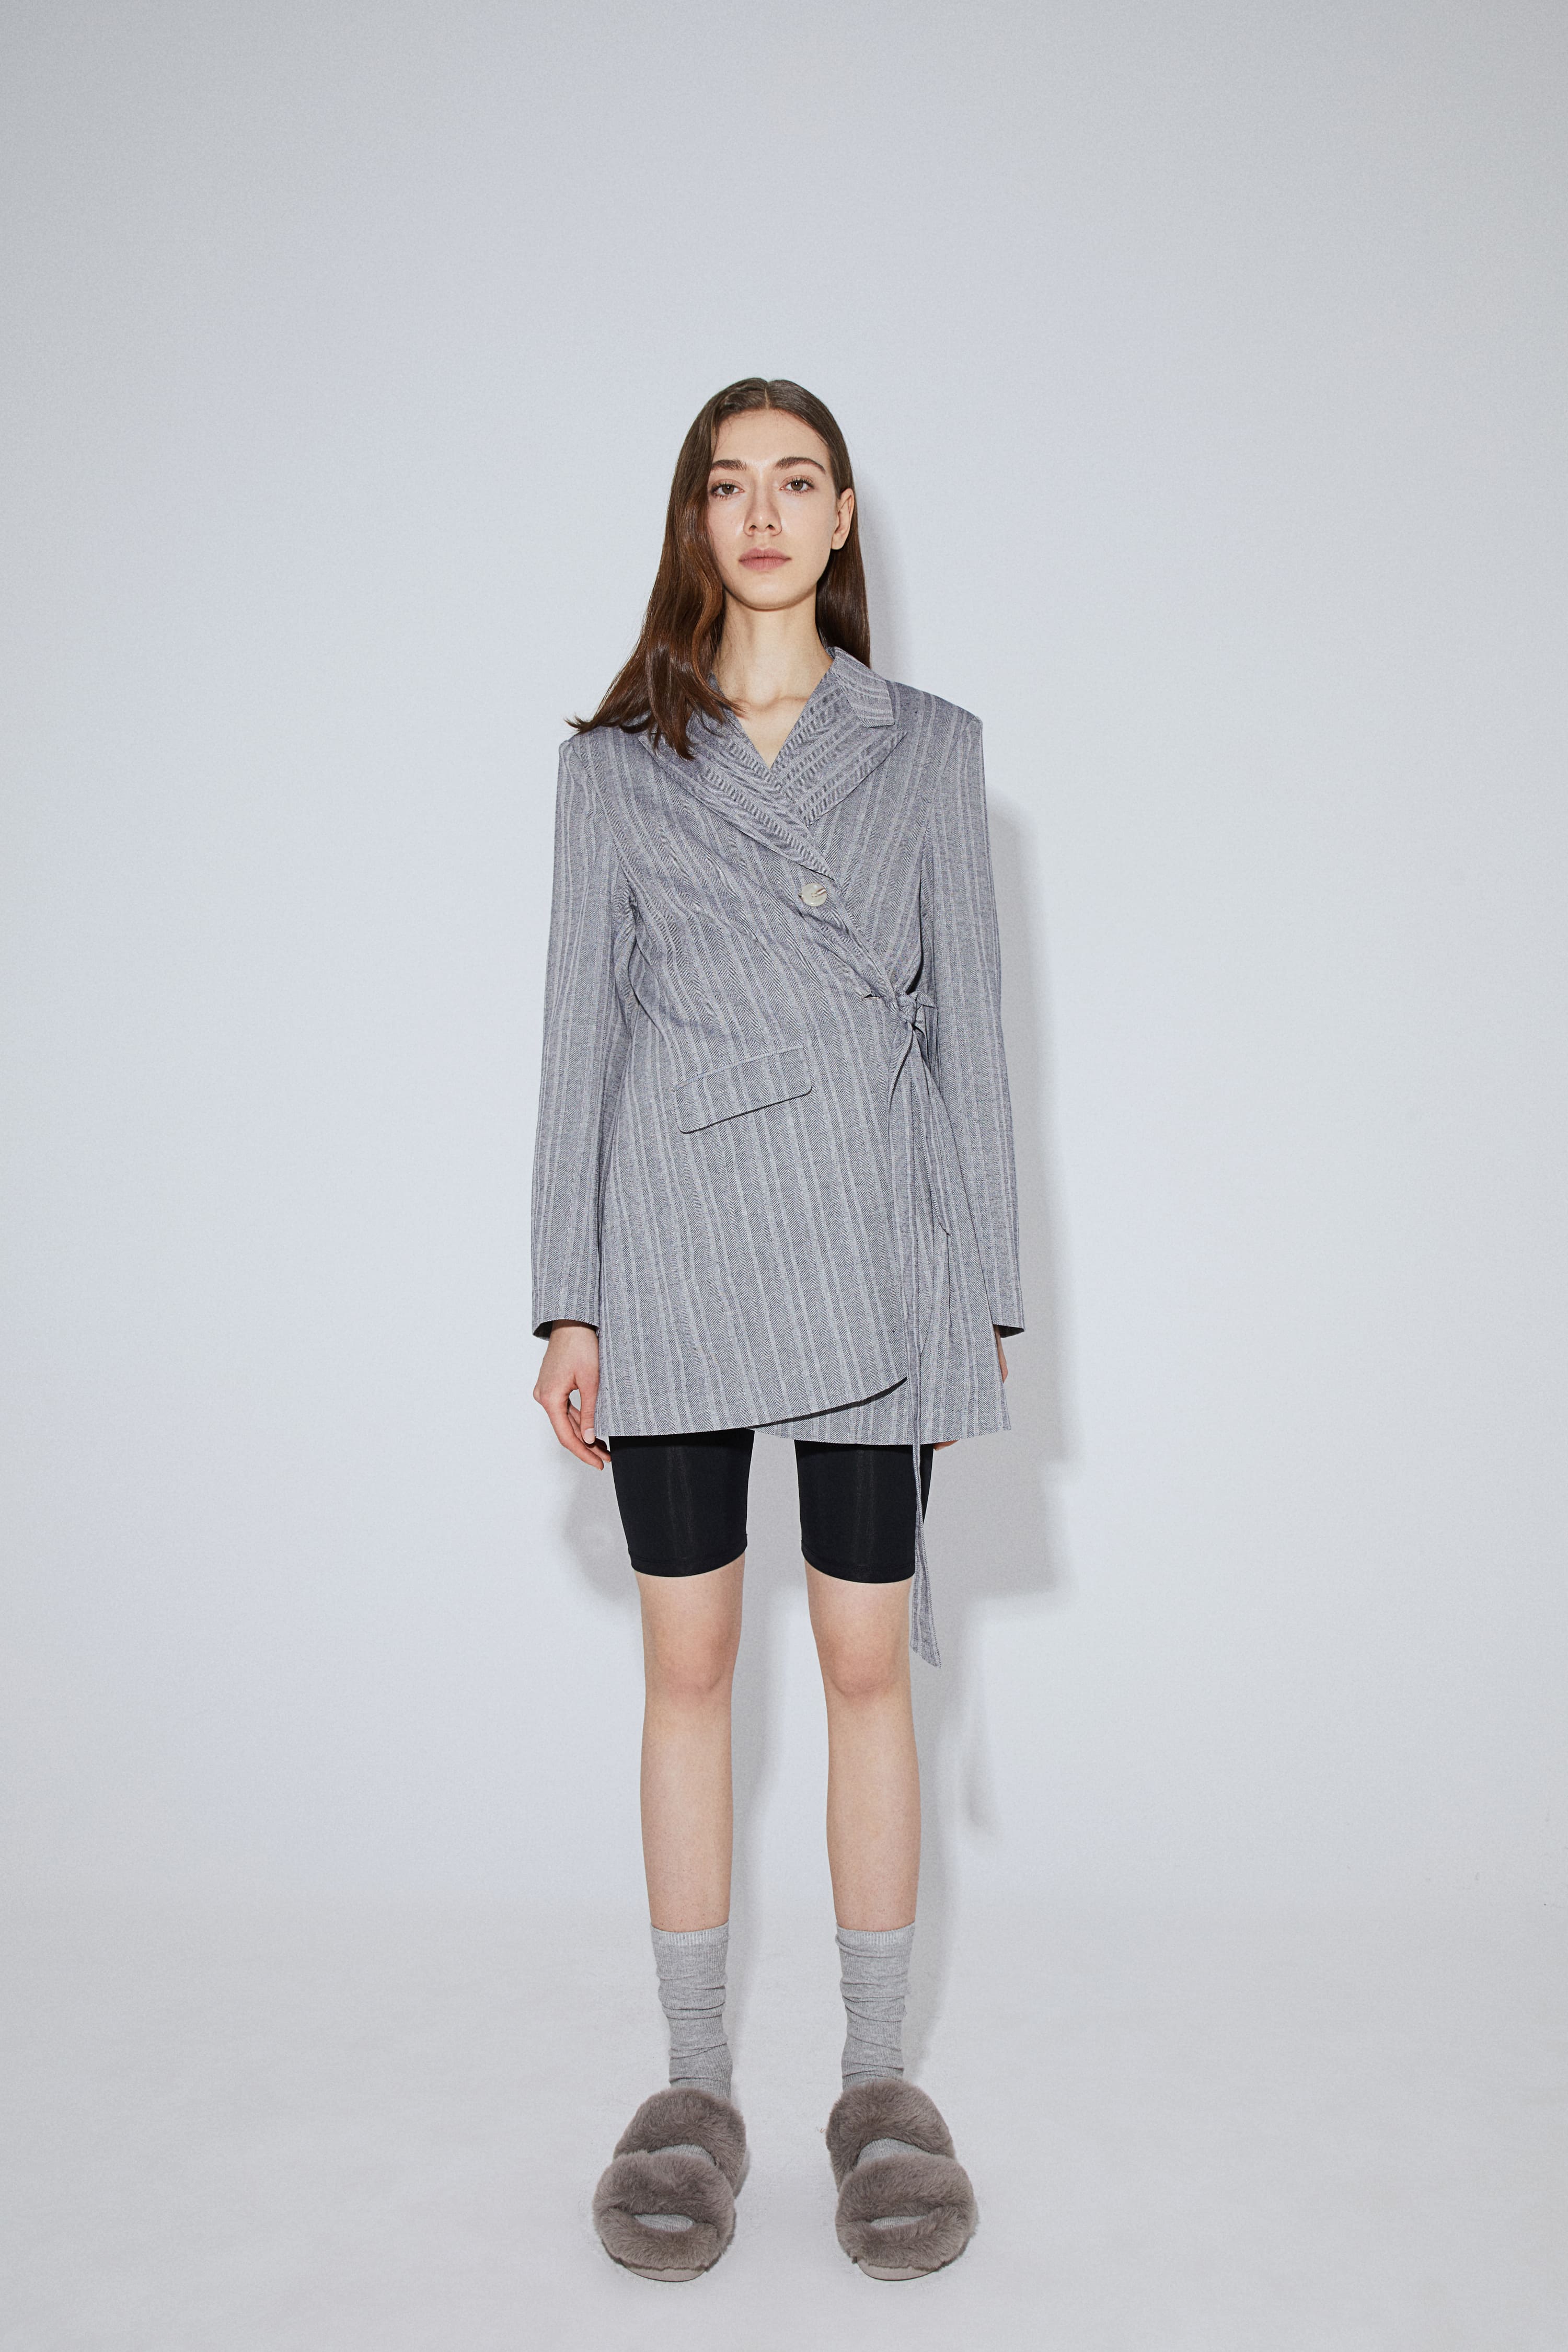 Gray Reversible Suit Dress - By Quaint